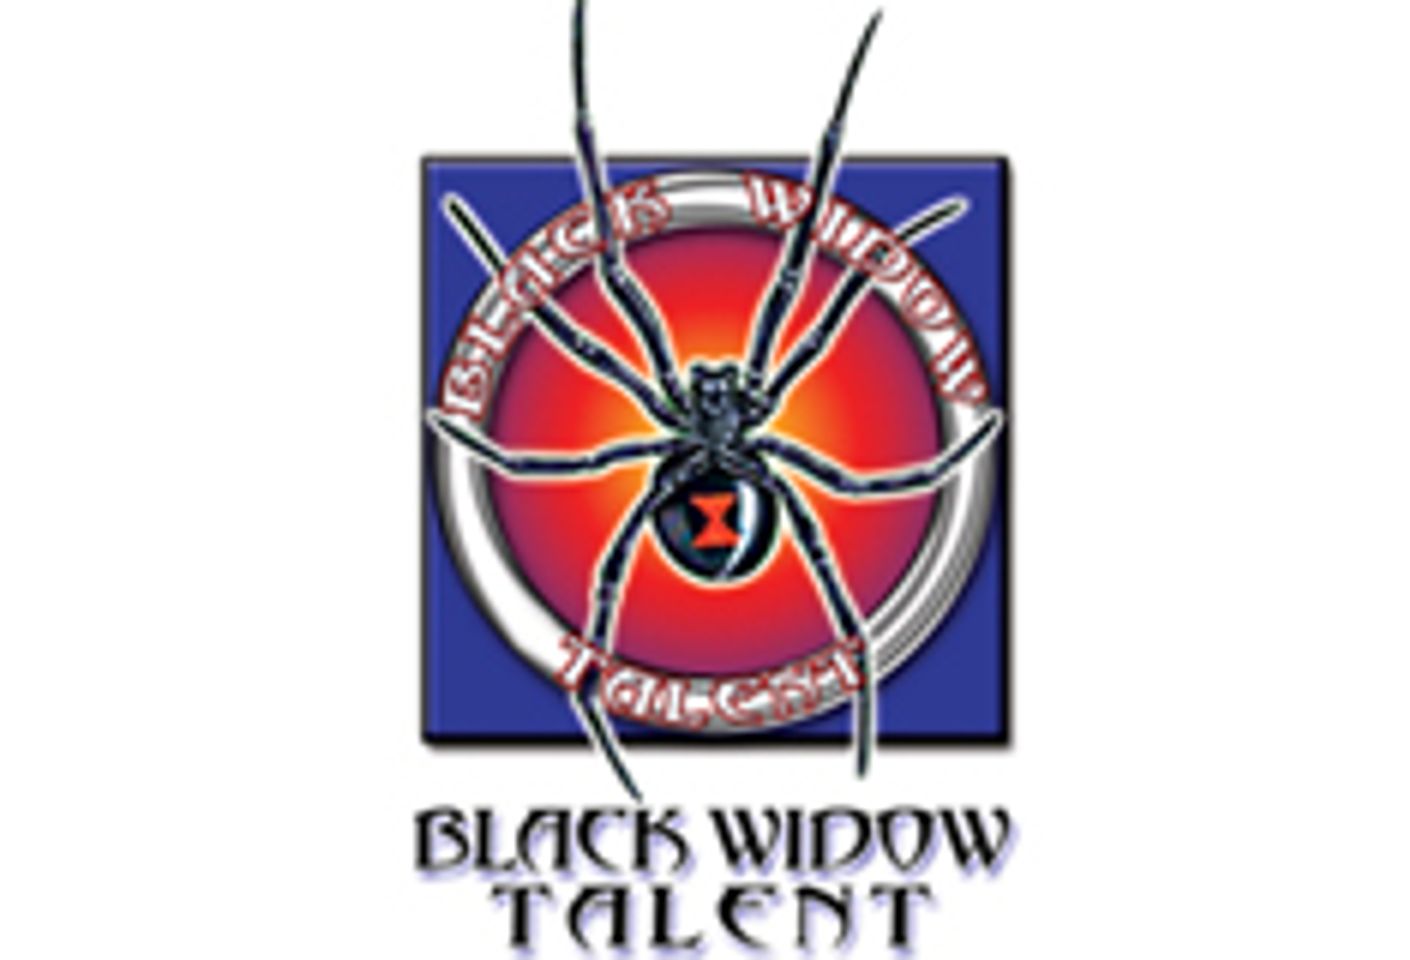 Black Widow Talent Moves To Sherman Oaks